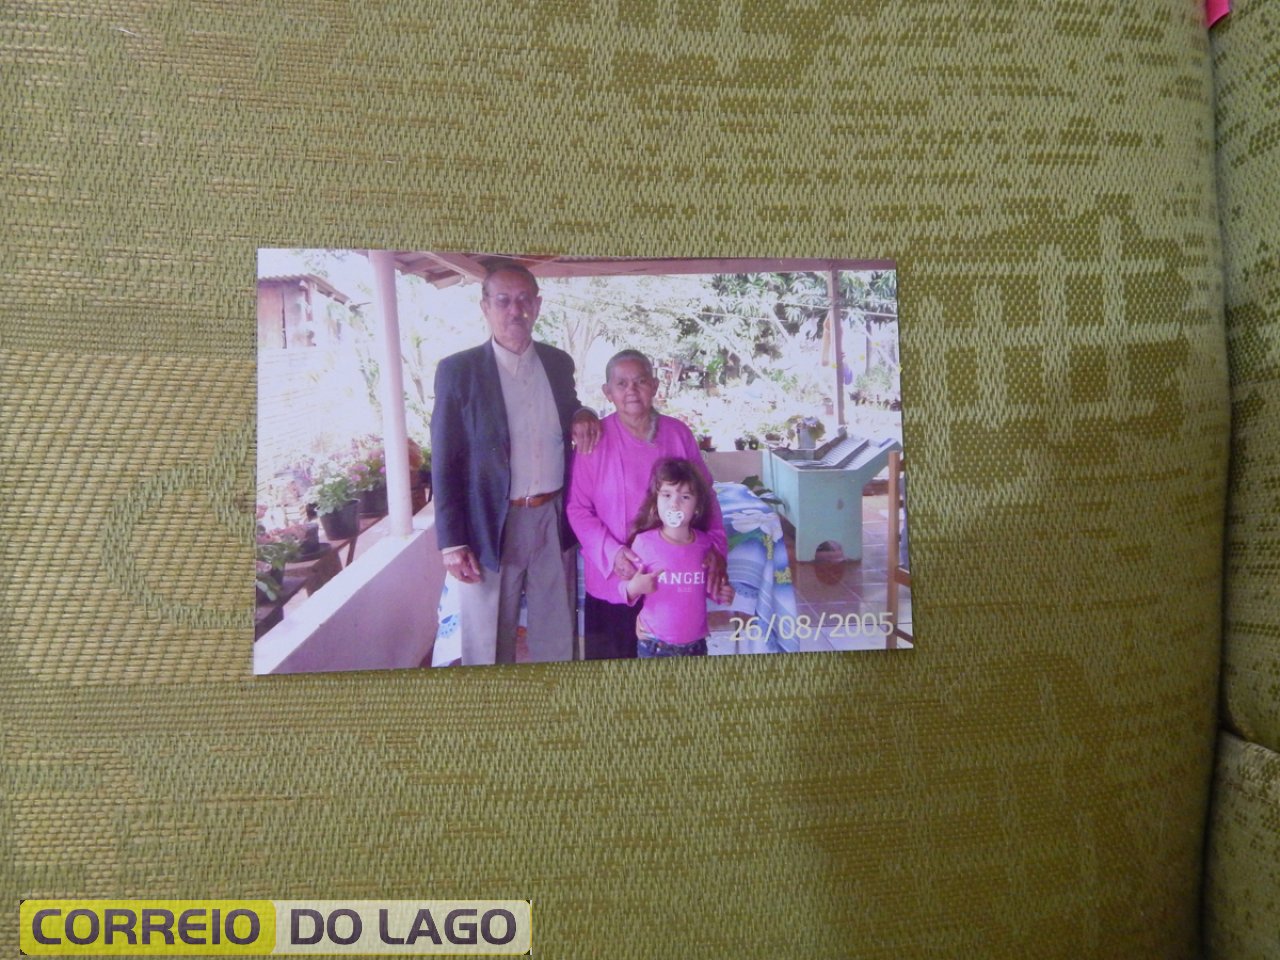 Marcelino José Galvão e Ana Rosa Galvão. Década de  2000. Vera Cruz do Oeste - Pr.